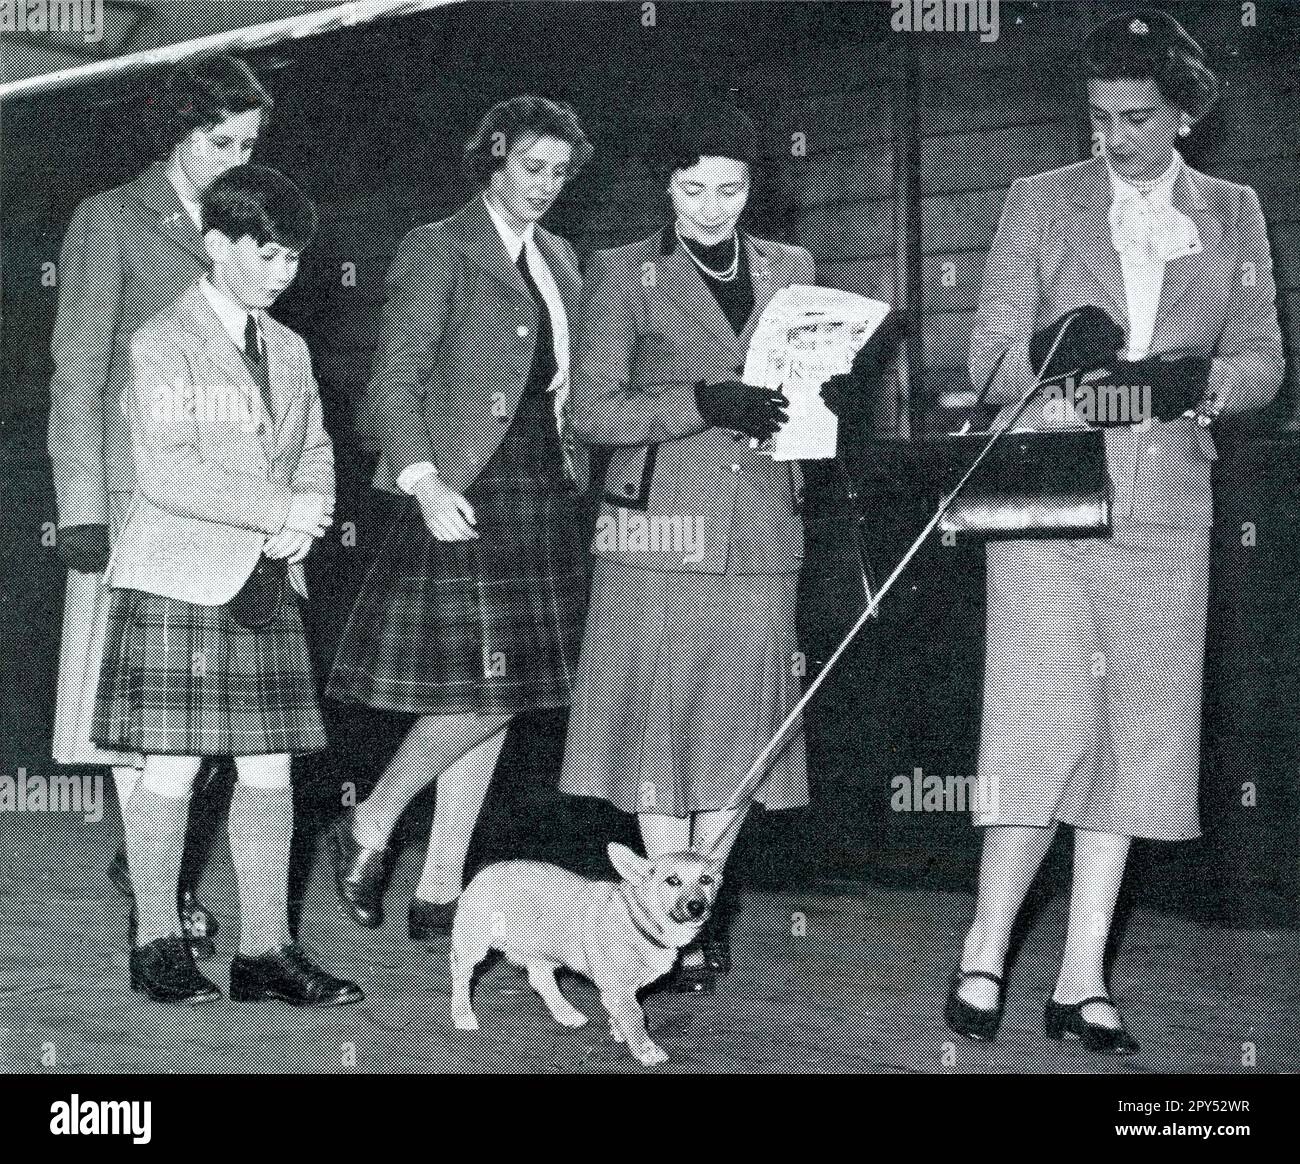 Stampa fotografia della Duchessa del Kent con il suo cane Corgi alla Stazione congiunta di Aberdeen in procinto di viaggiare per una vacanza a Deeside il 5th settembre 1951. È accompagnata dai suoi figli, il principe Michael del Kent e la principessa Alexandra del Kent, entrambi che indossano un kilt. Scozia, Regno Unito Foto Stock